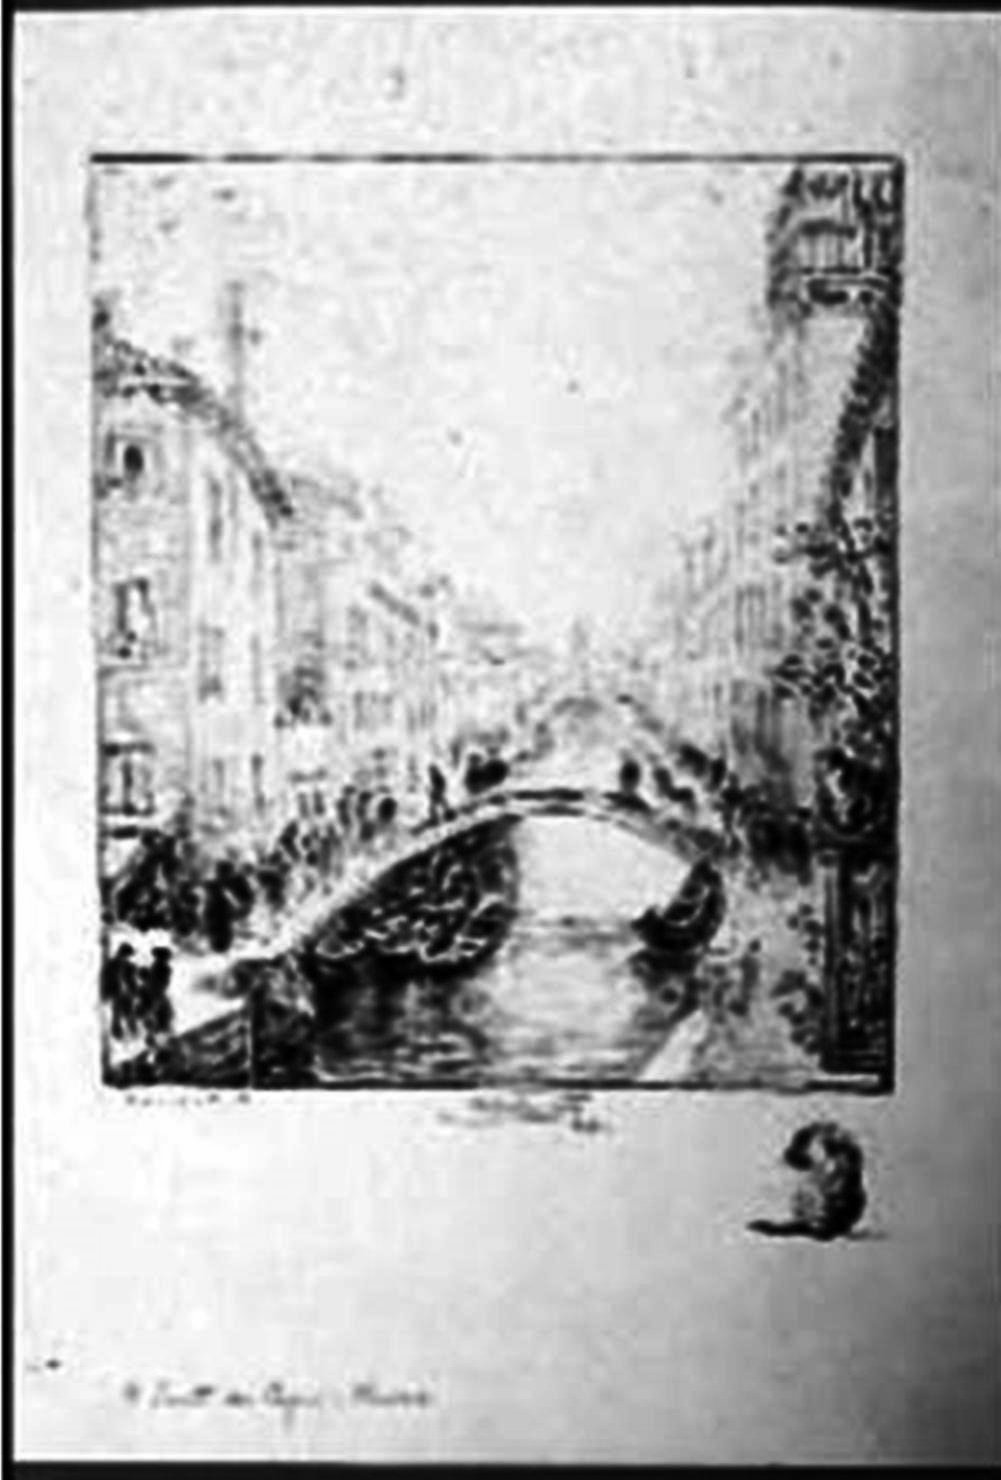 Il ponte dei pugni - venezia, veduta di venezia (stampa)